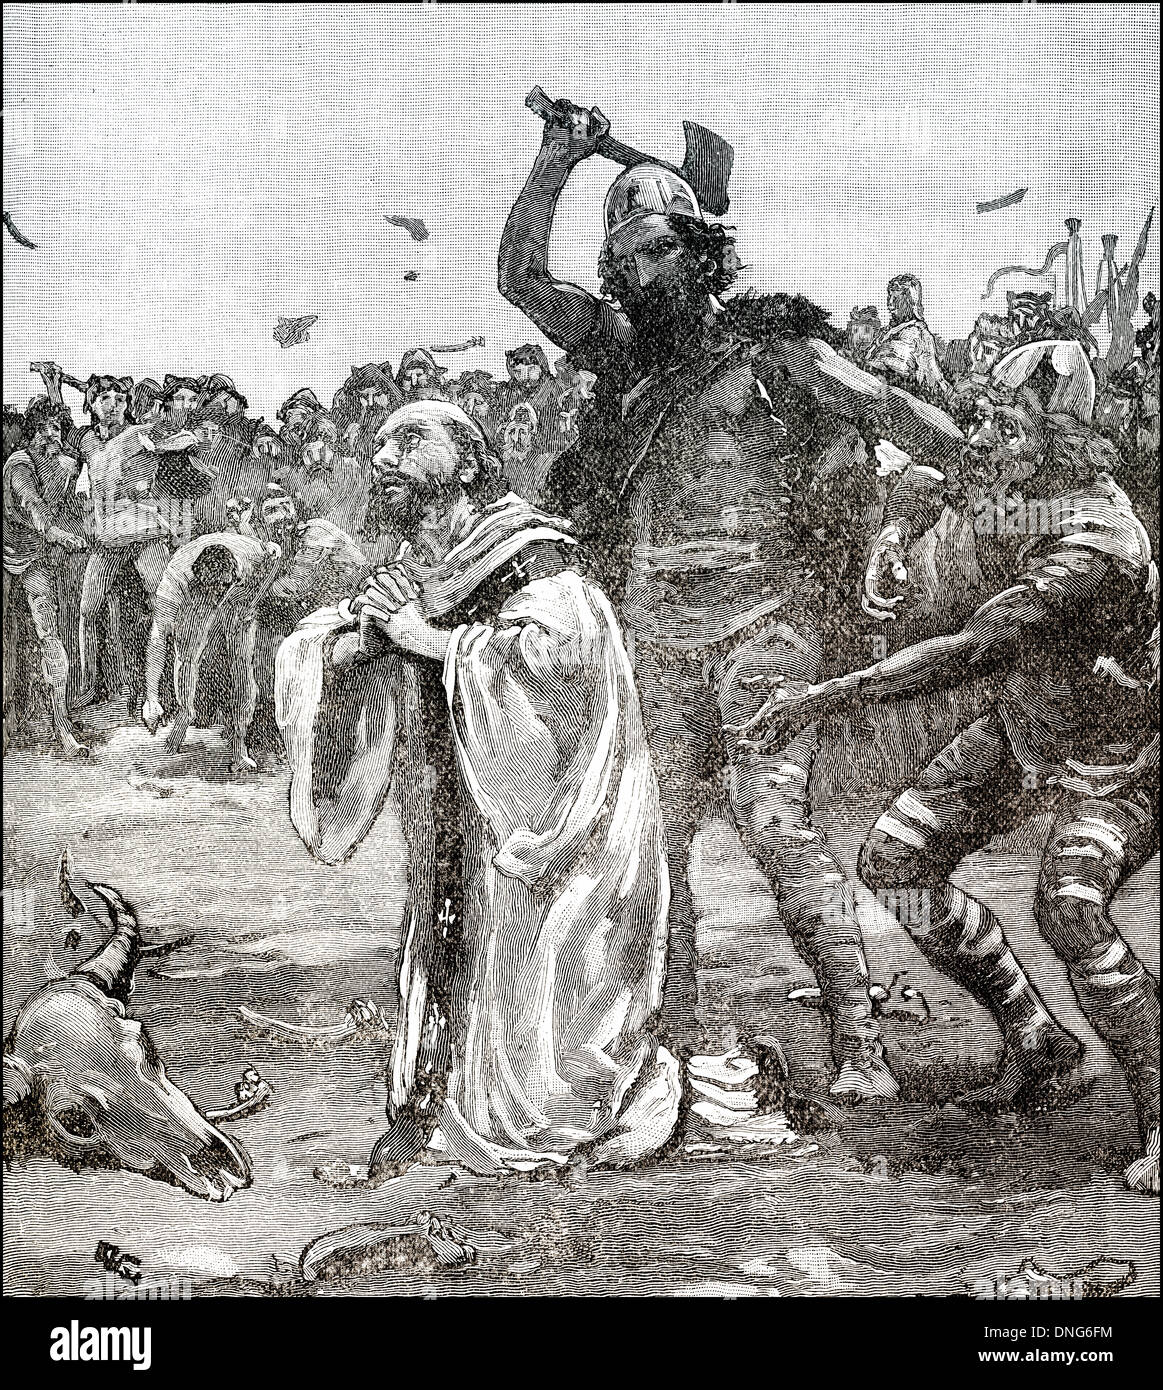 L'de martydom, Alphege ou Alfege AElfheah, 954 - 1012, un évêque anglo-saxon de Canterbury, tué par les danois Banque D'Images